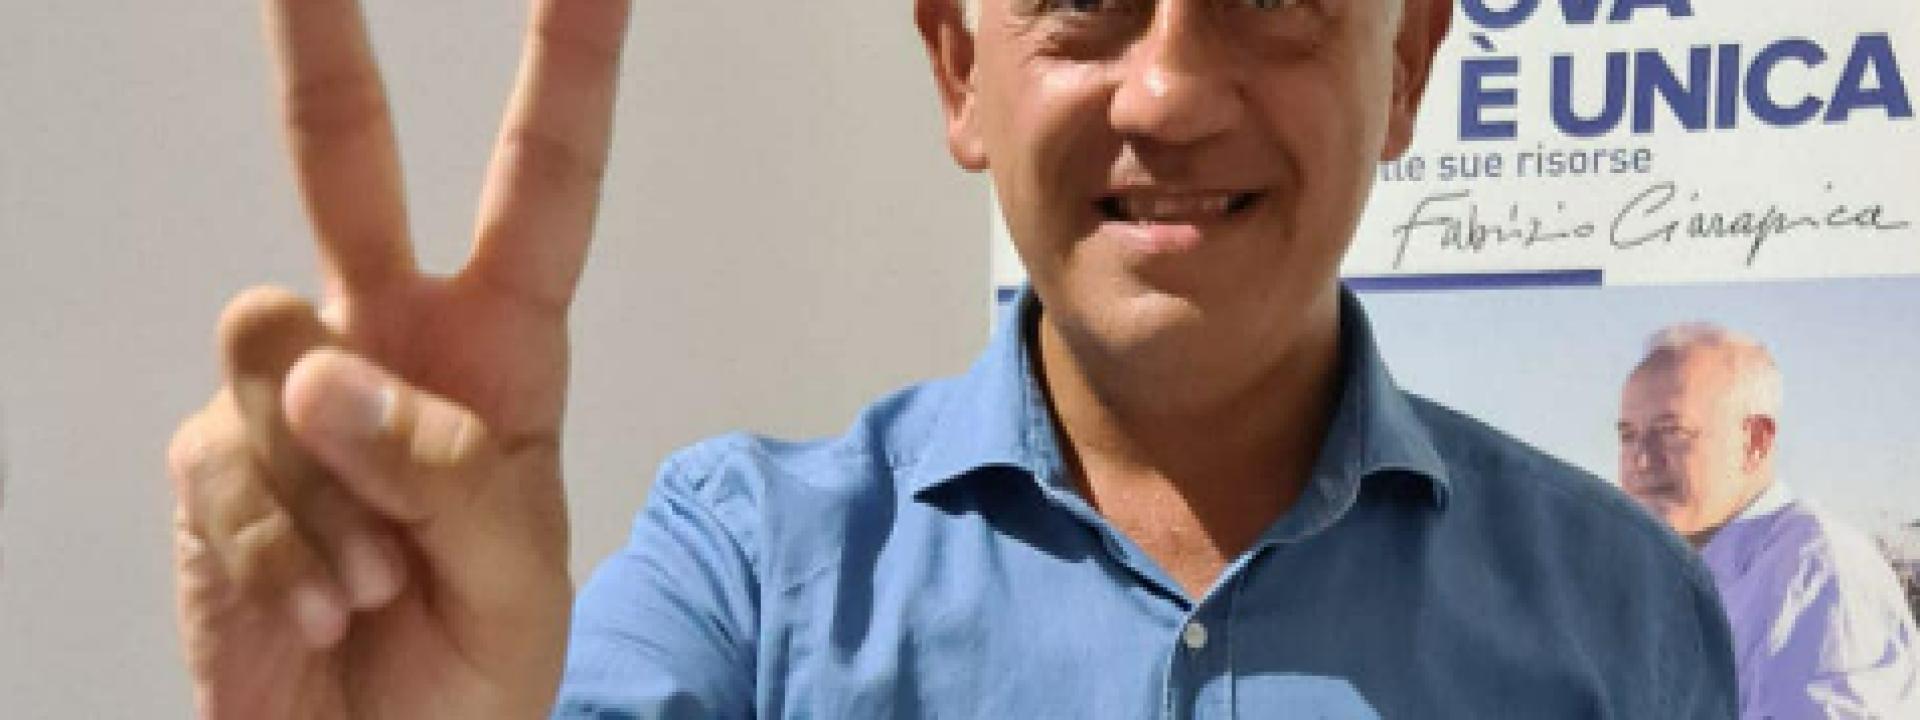 Marche - Fabrizio Ciarapica si conferma sindaco di Civitanova